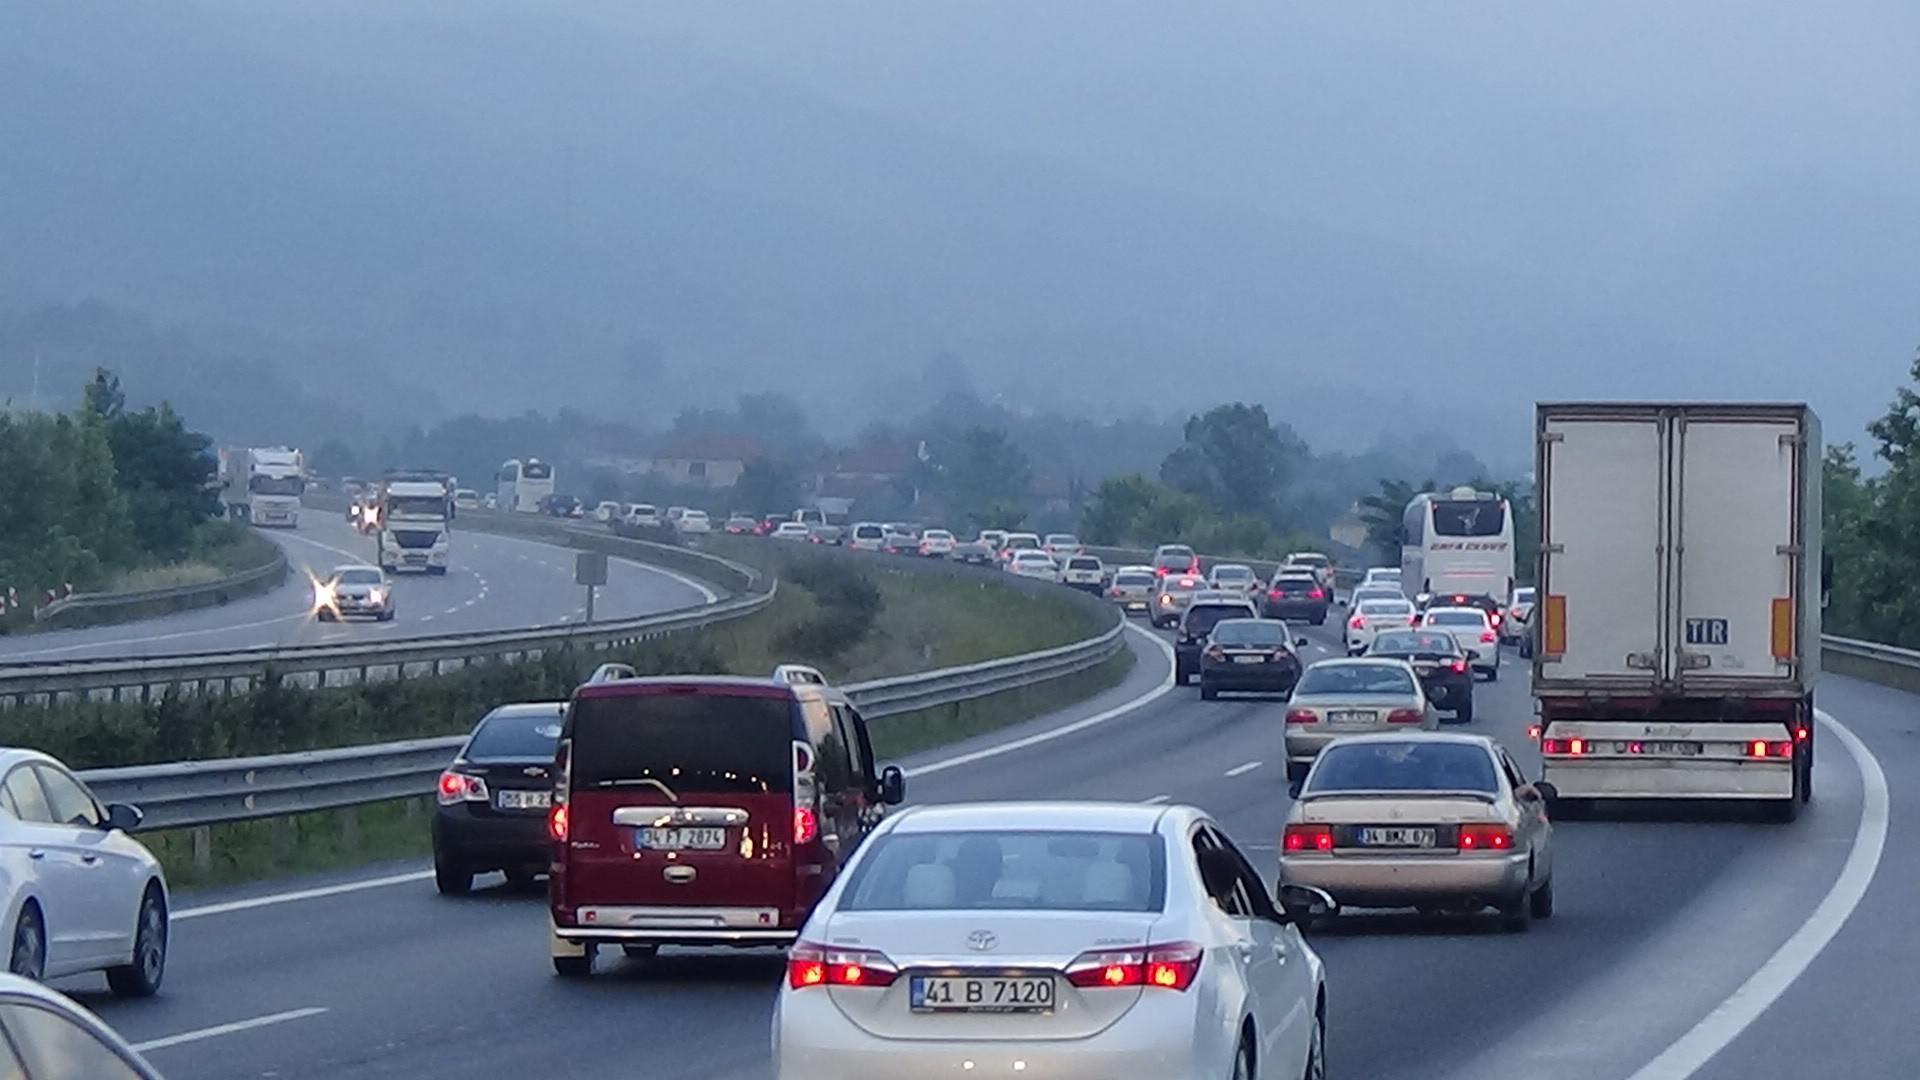 Bolu Dağı’nda yoğun bayram trafiği